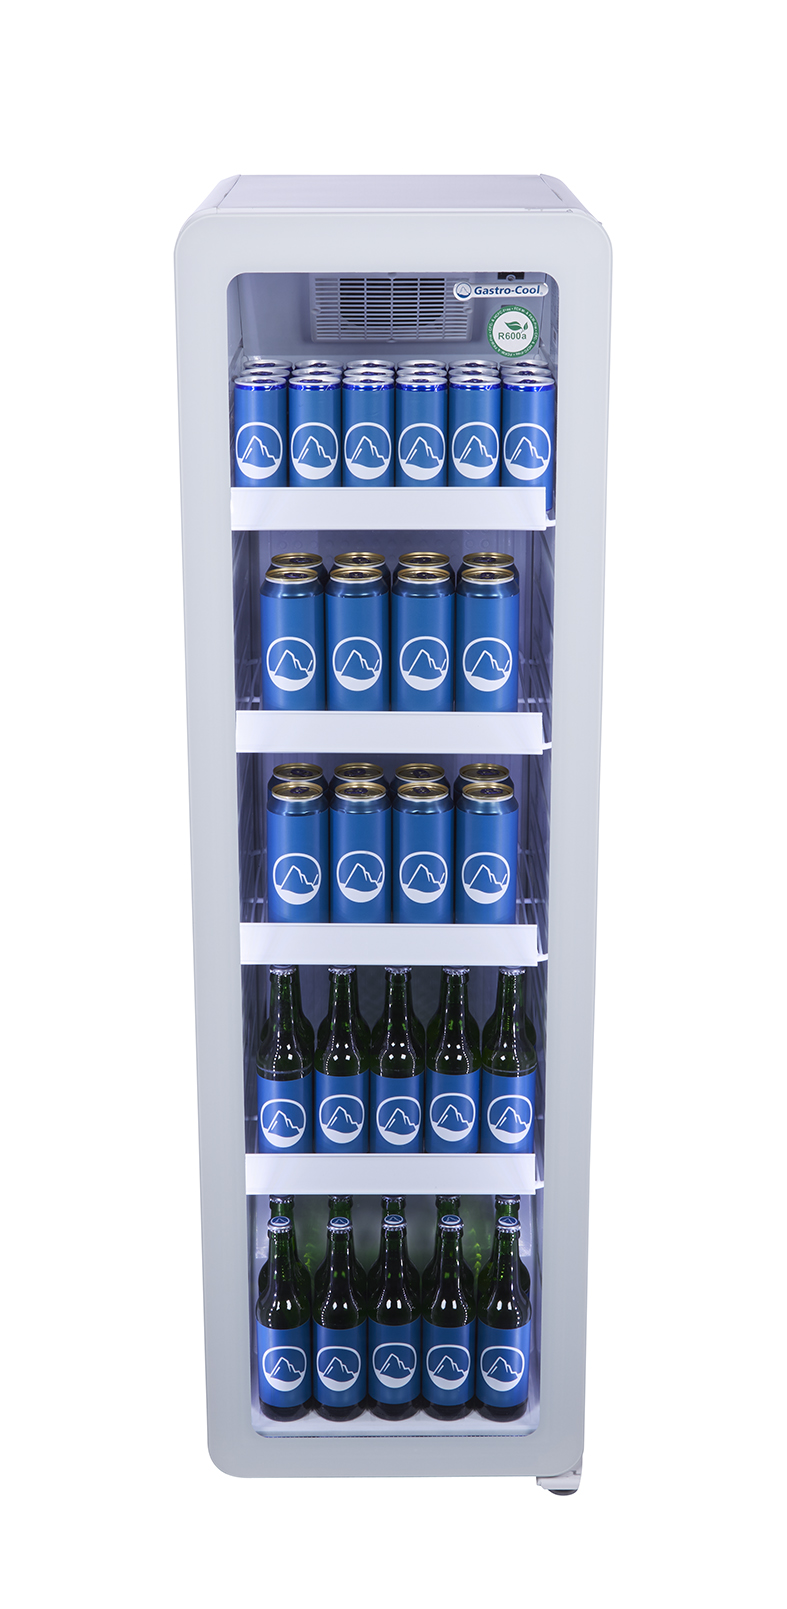 Flaschenkühlschrank schmal - Retro Look - vintage - Glastür - weiß - GCGD135 - Vorderansicht gefühlt